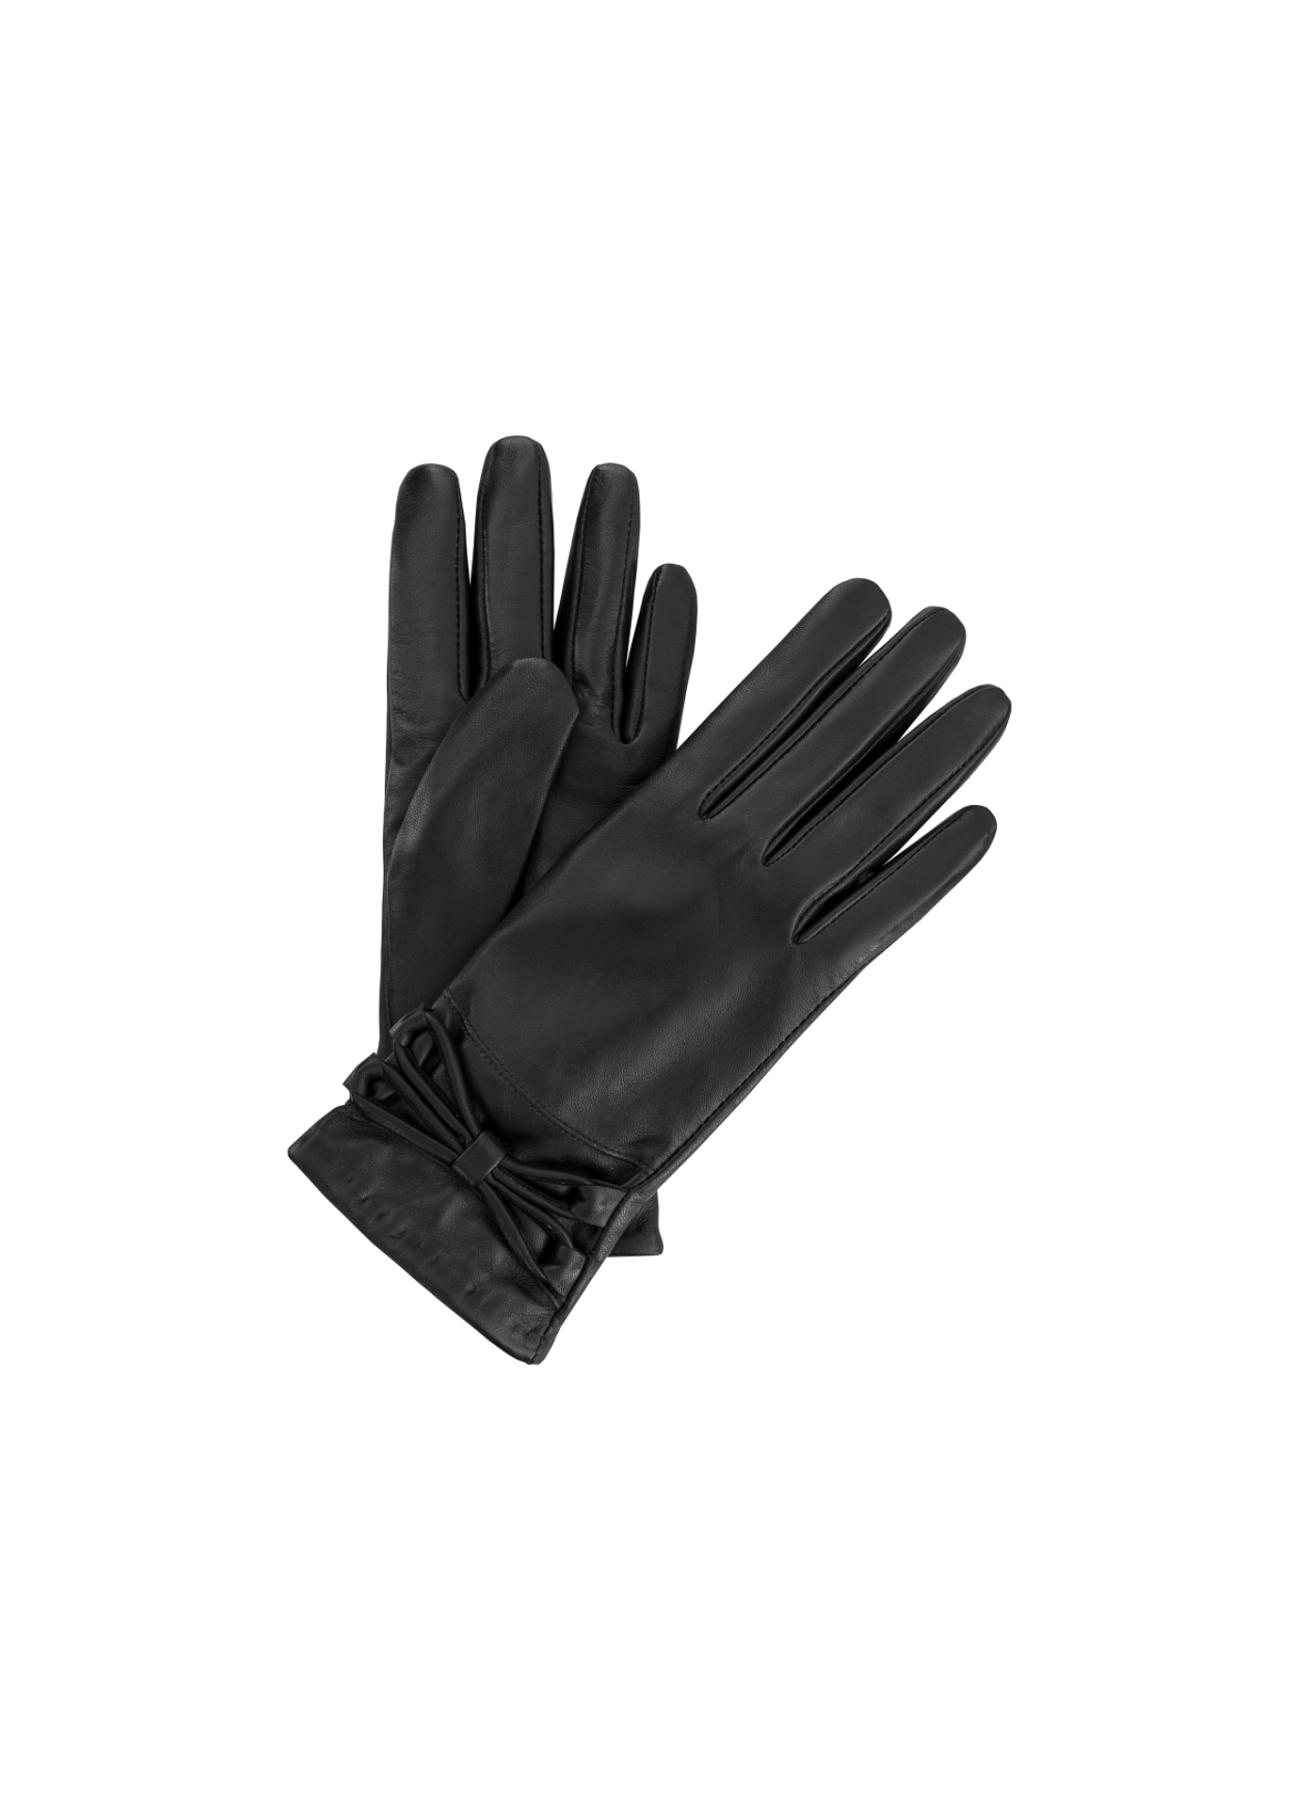 Skórzane rękawiczki damskie z kokardą REKDS-0025-99(Z23)